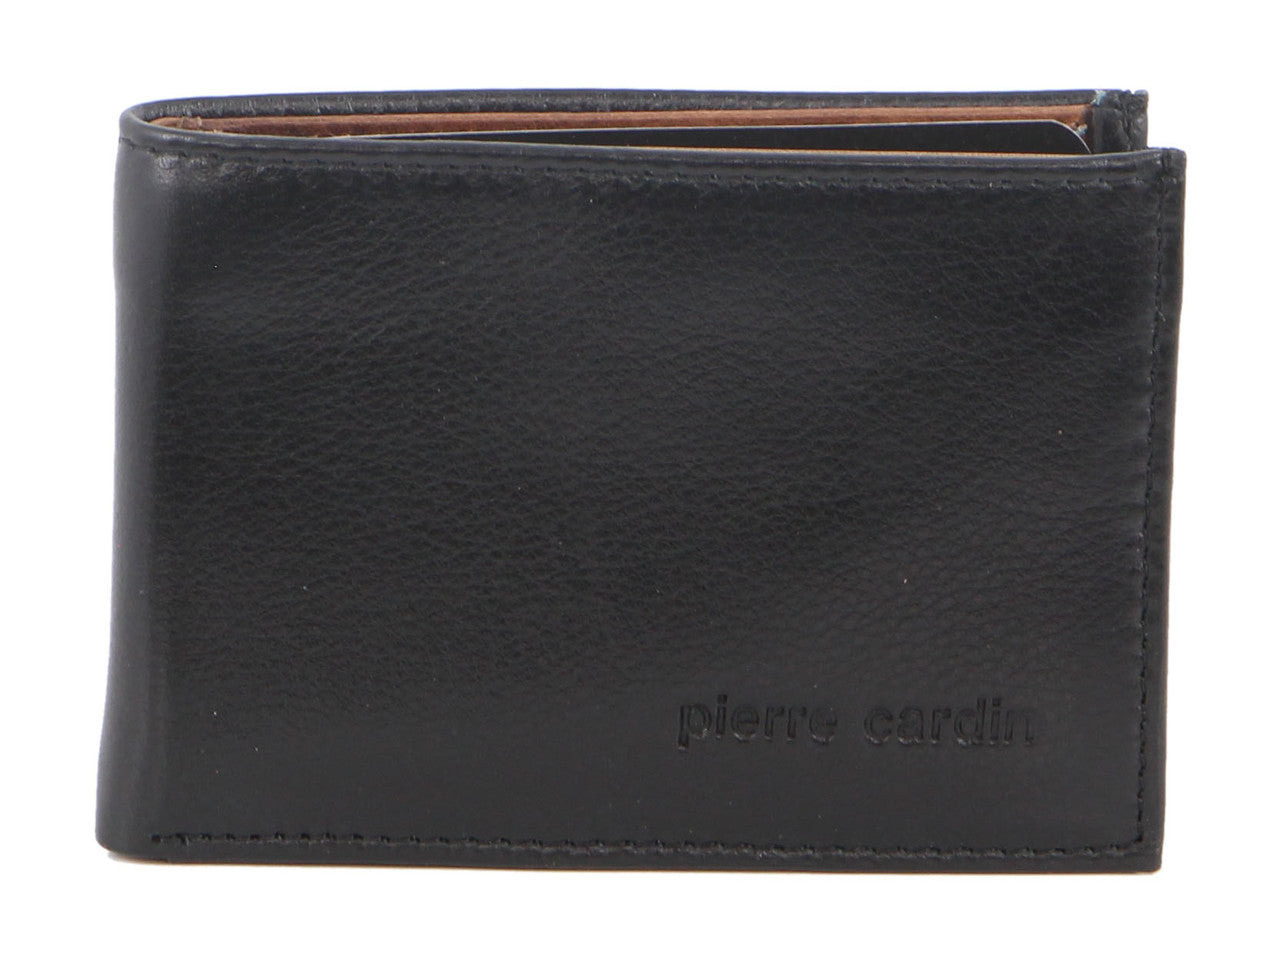 Pierre Cardin PC2629 Black/Cognac Leather Mens Wallet